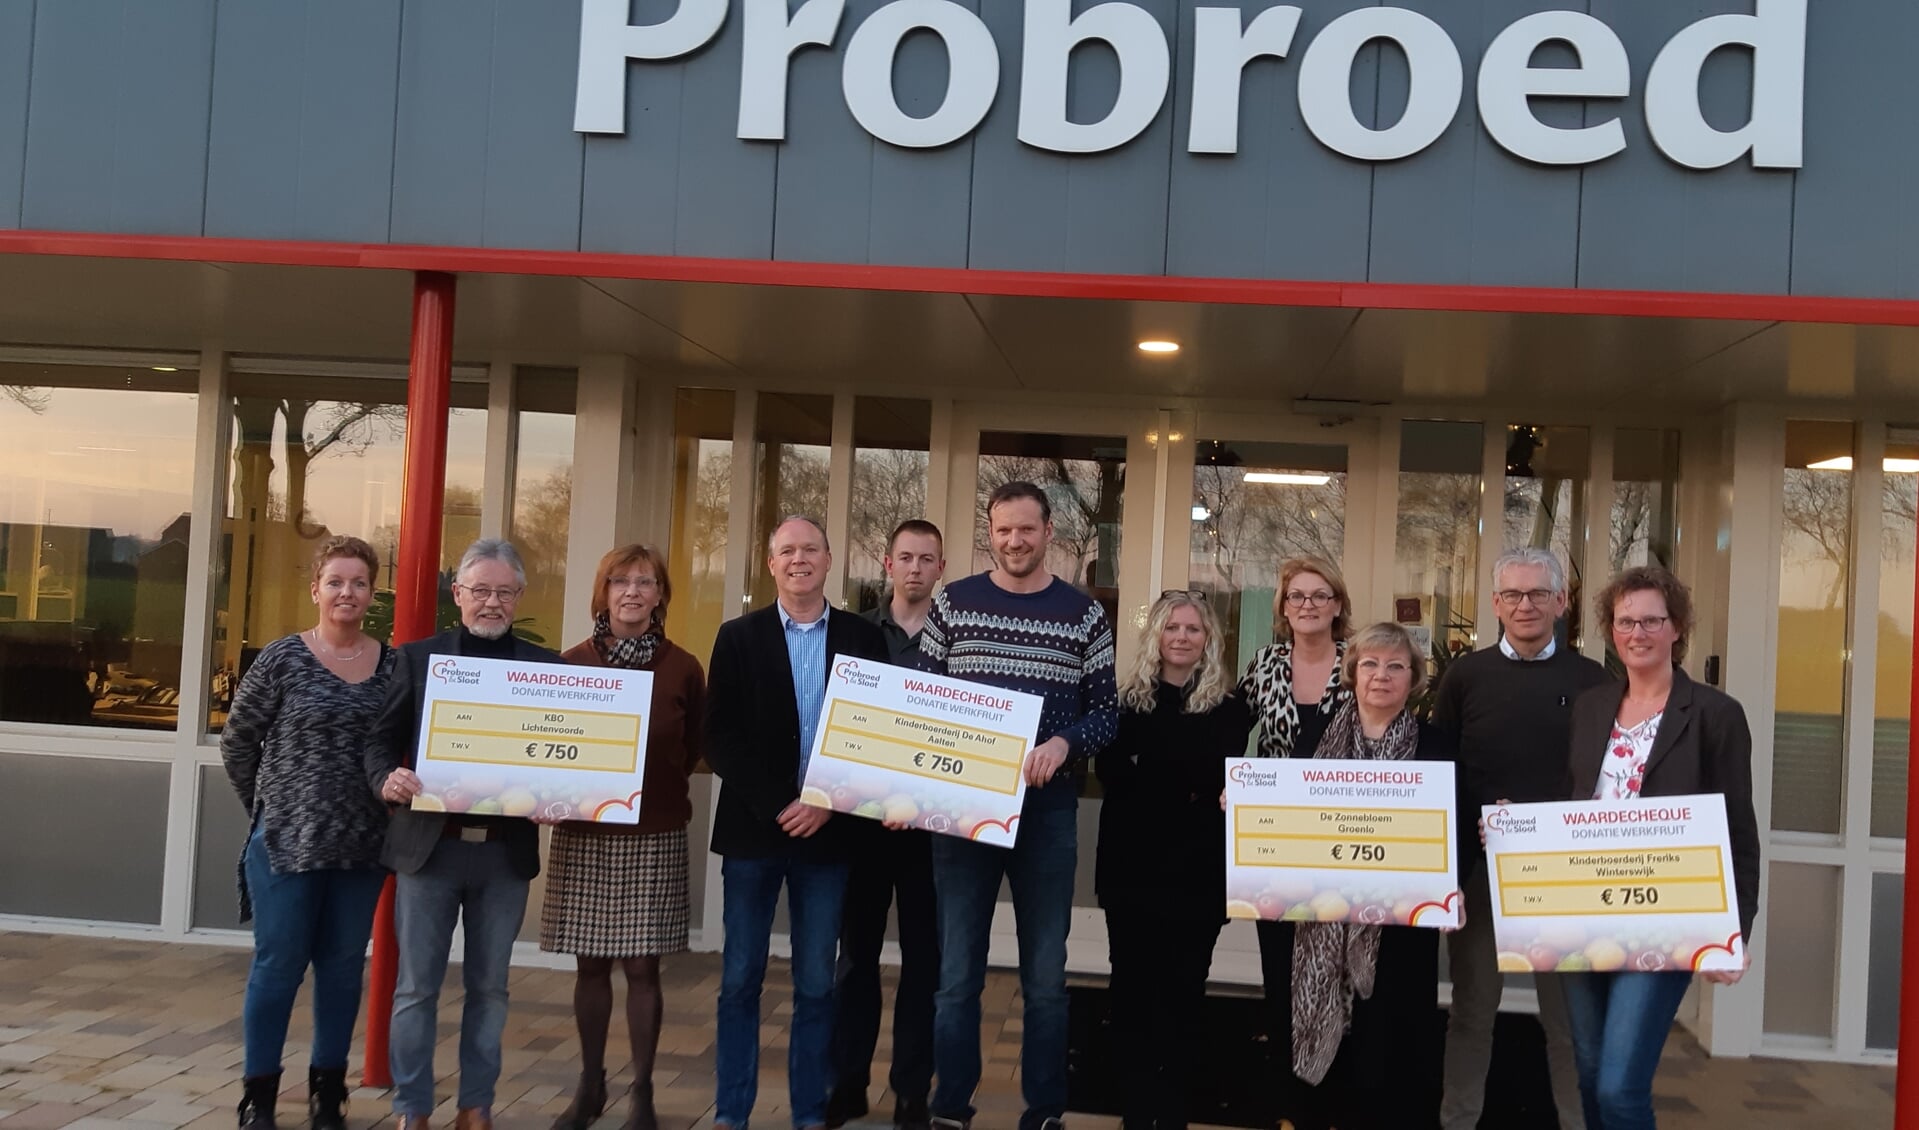 De organisaties zijn blij met hun cheque van Probroed & Sloot. Foto: Ferry Broshuis